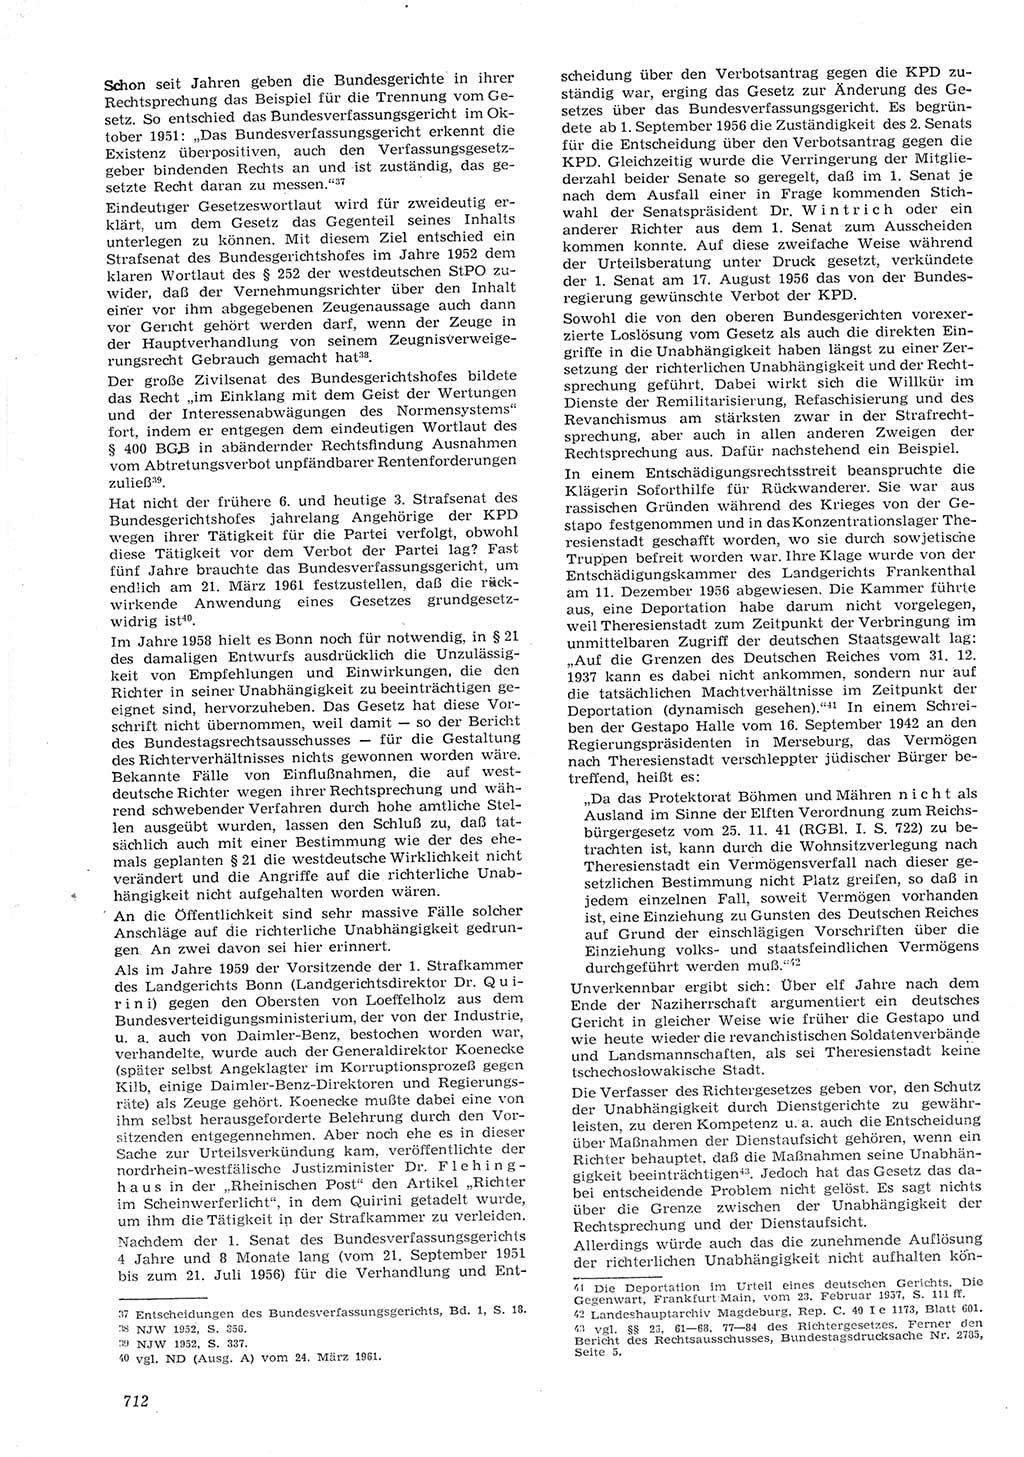 Neue Justiz (NJ), Zeitschrift für Recht und Rechtswissenschaft [Deutsche Demokratische Republik (DDR)], 15. Jahrgang 1961, Seite 712 (NJ DDR 1961, S. 712)